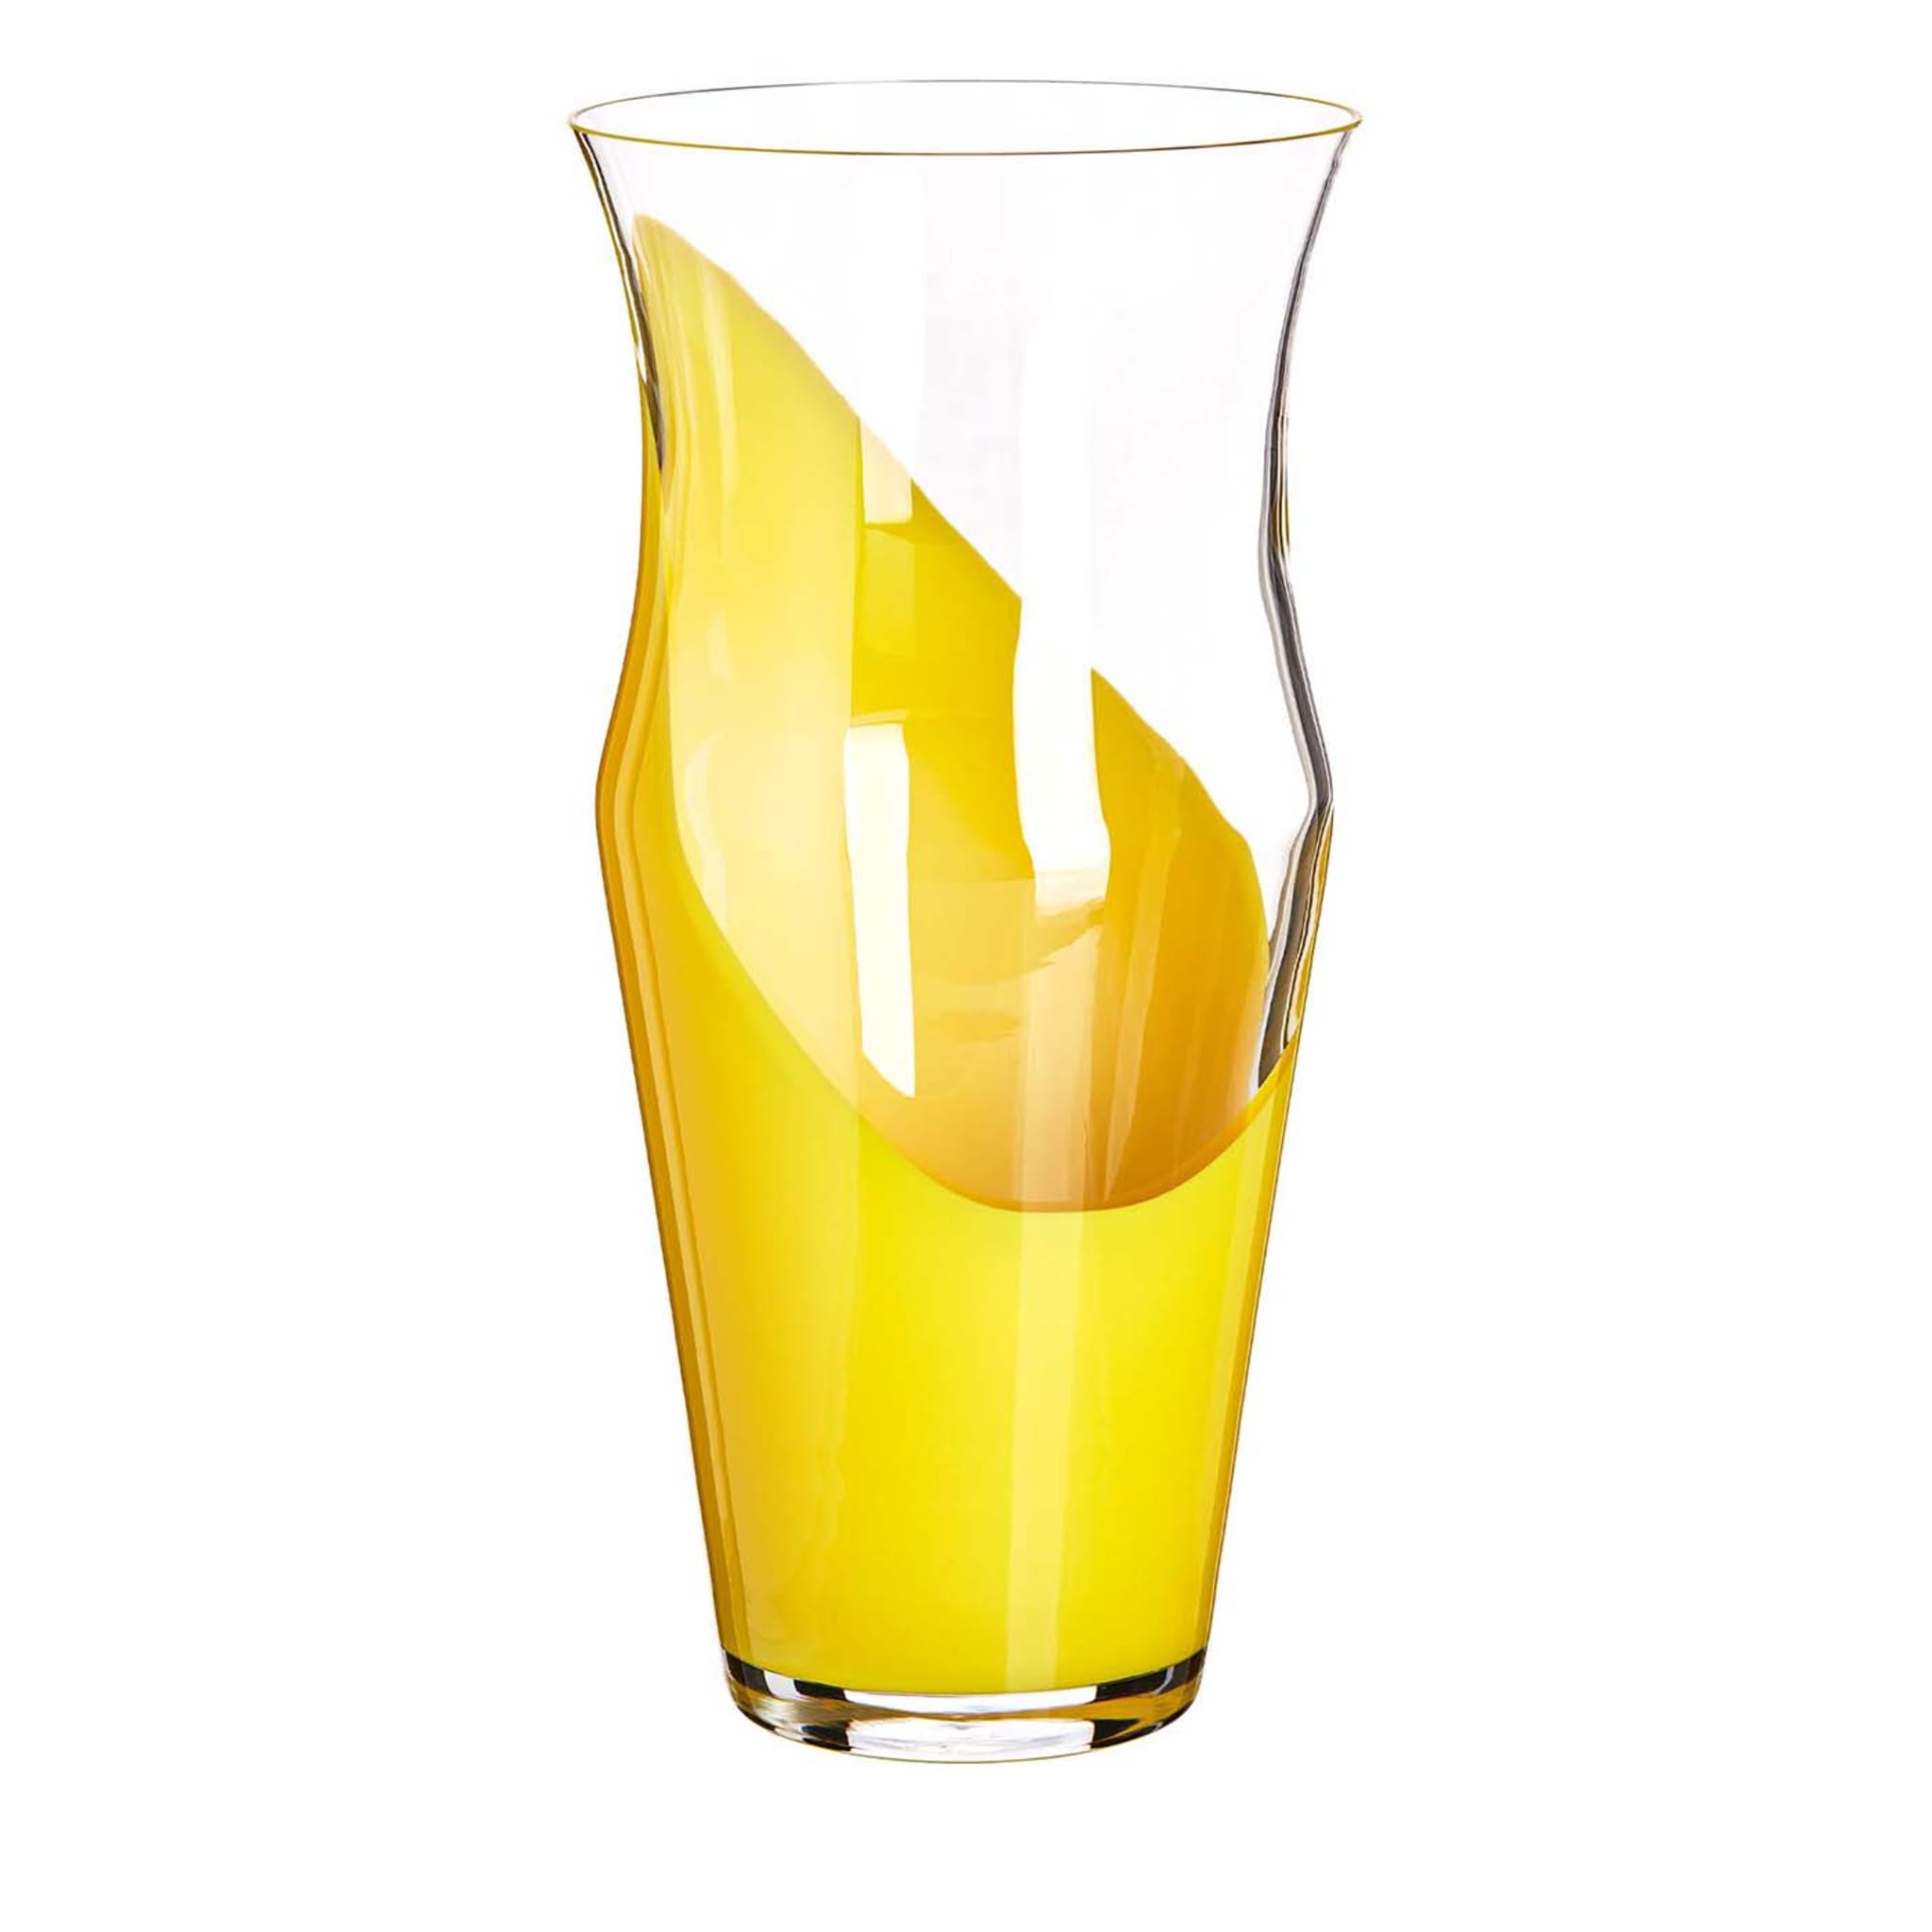 Gelbe und transparente Monocromo-Vase von Carlo Moretti - Hauptansicht